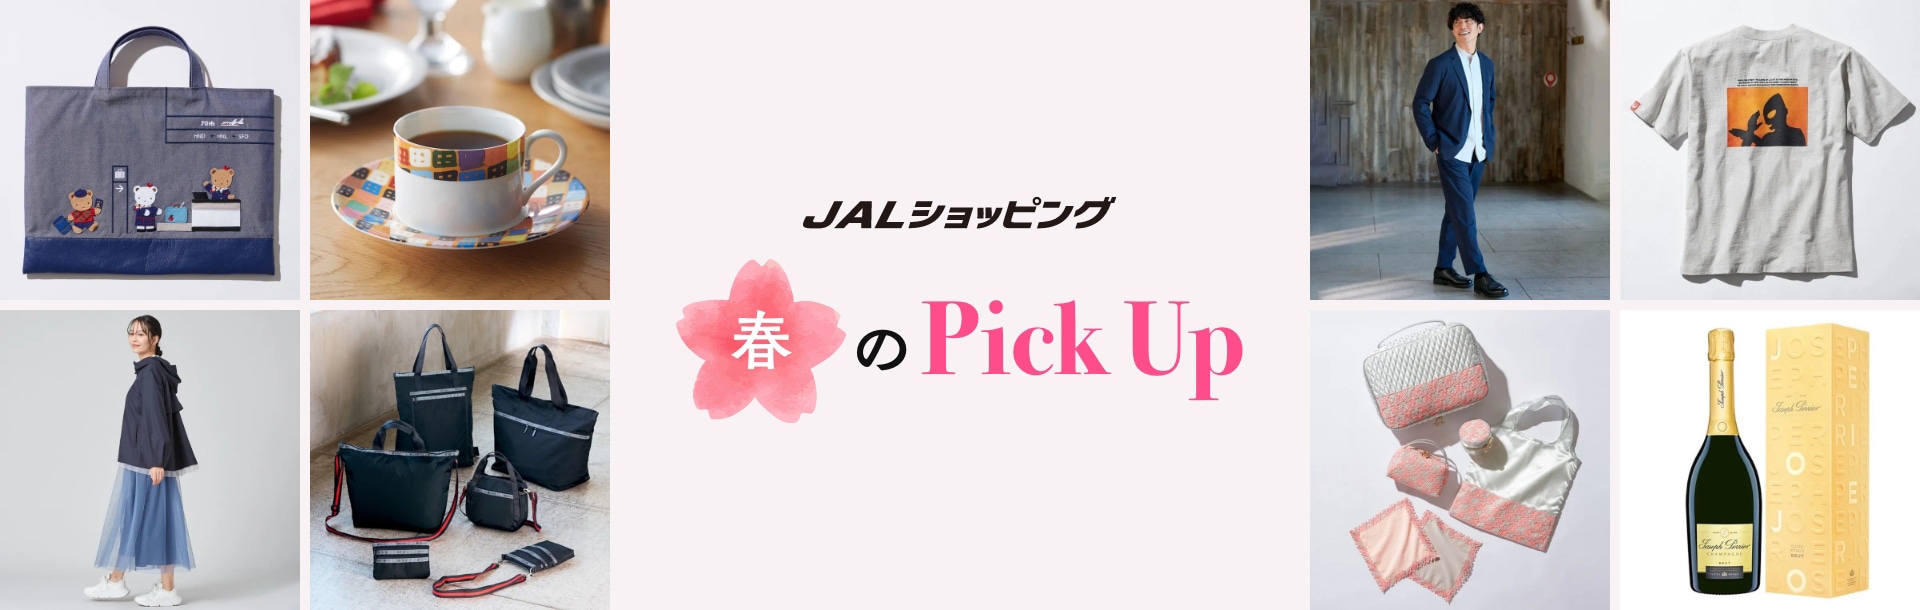 JALショッピング 春のPickUp